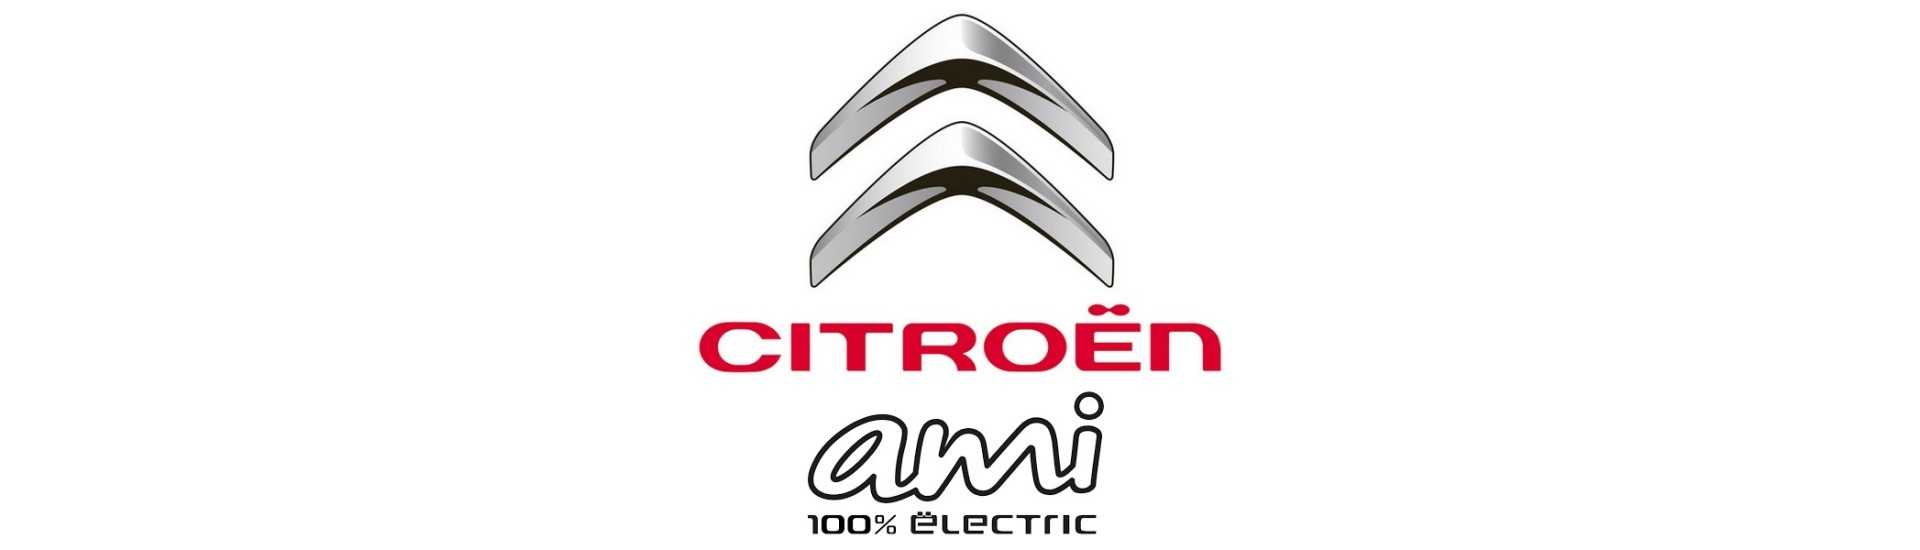 Handbromskabel till bästa prisbil utan tillstånd Citroën